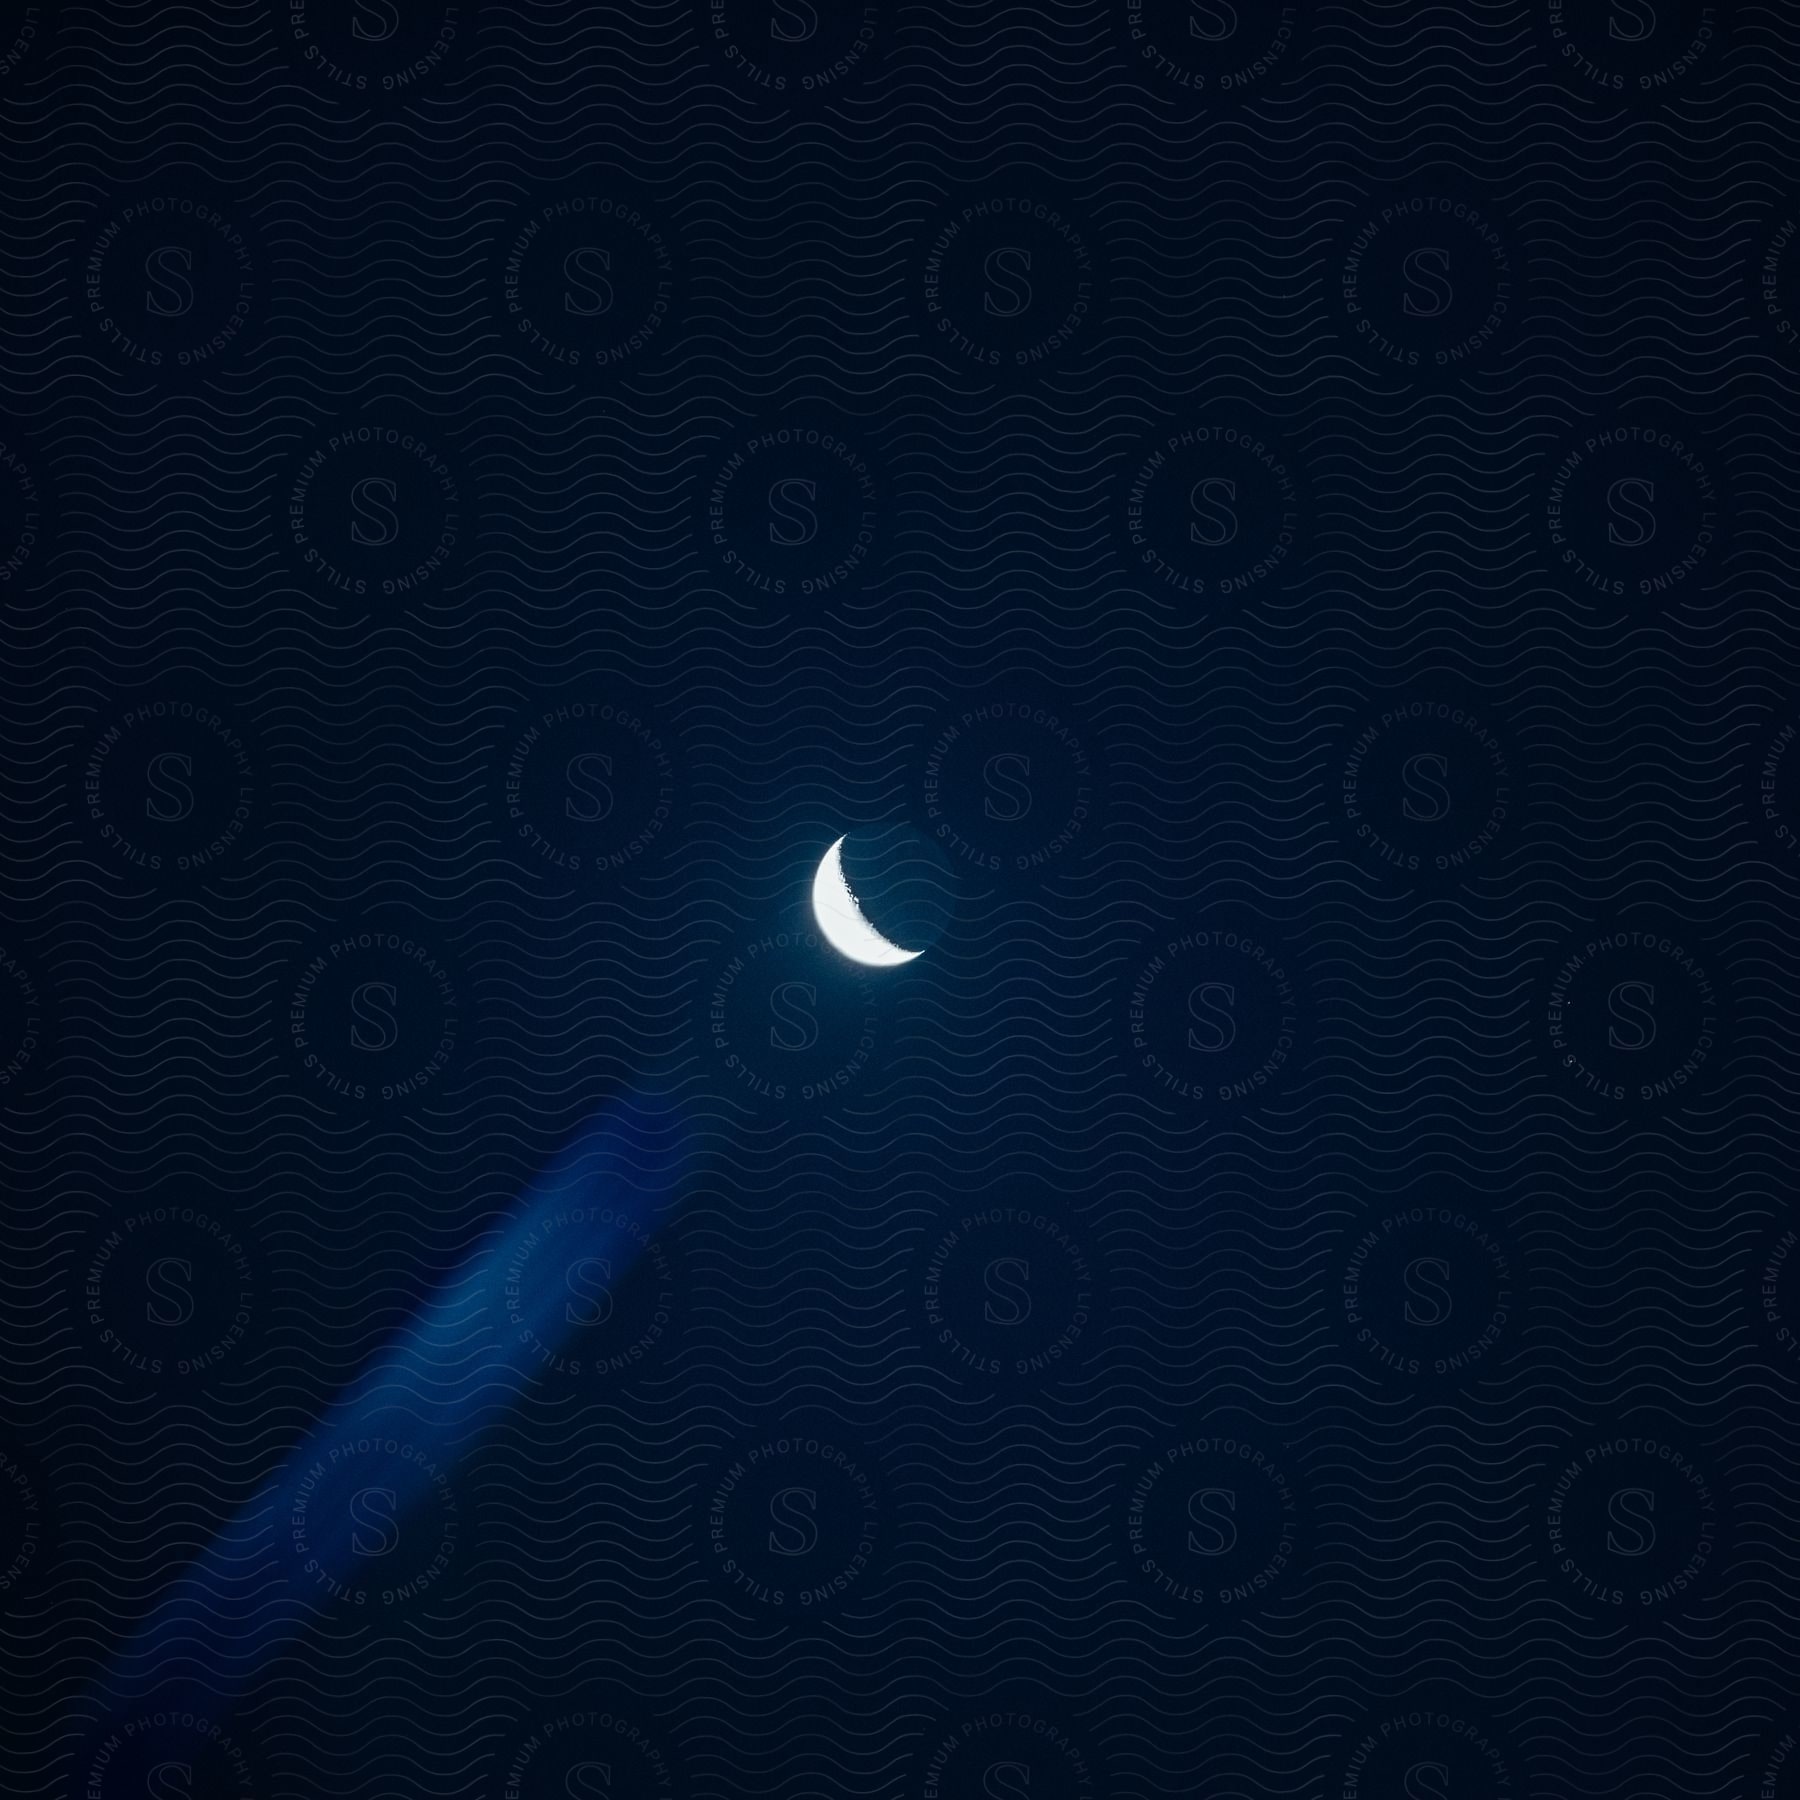 A serene half moon illuminates the surroundings under a dark night sky